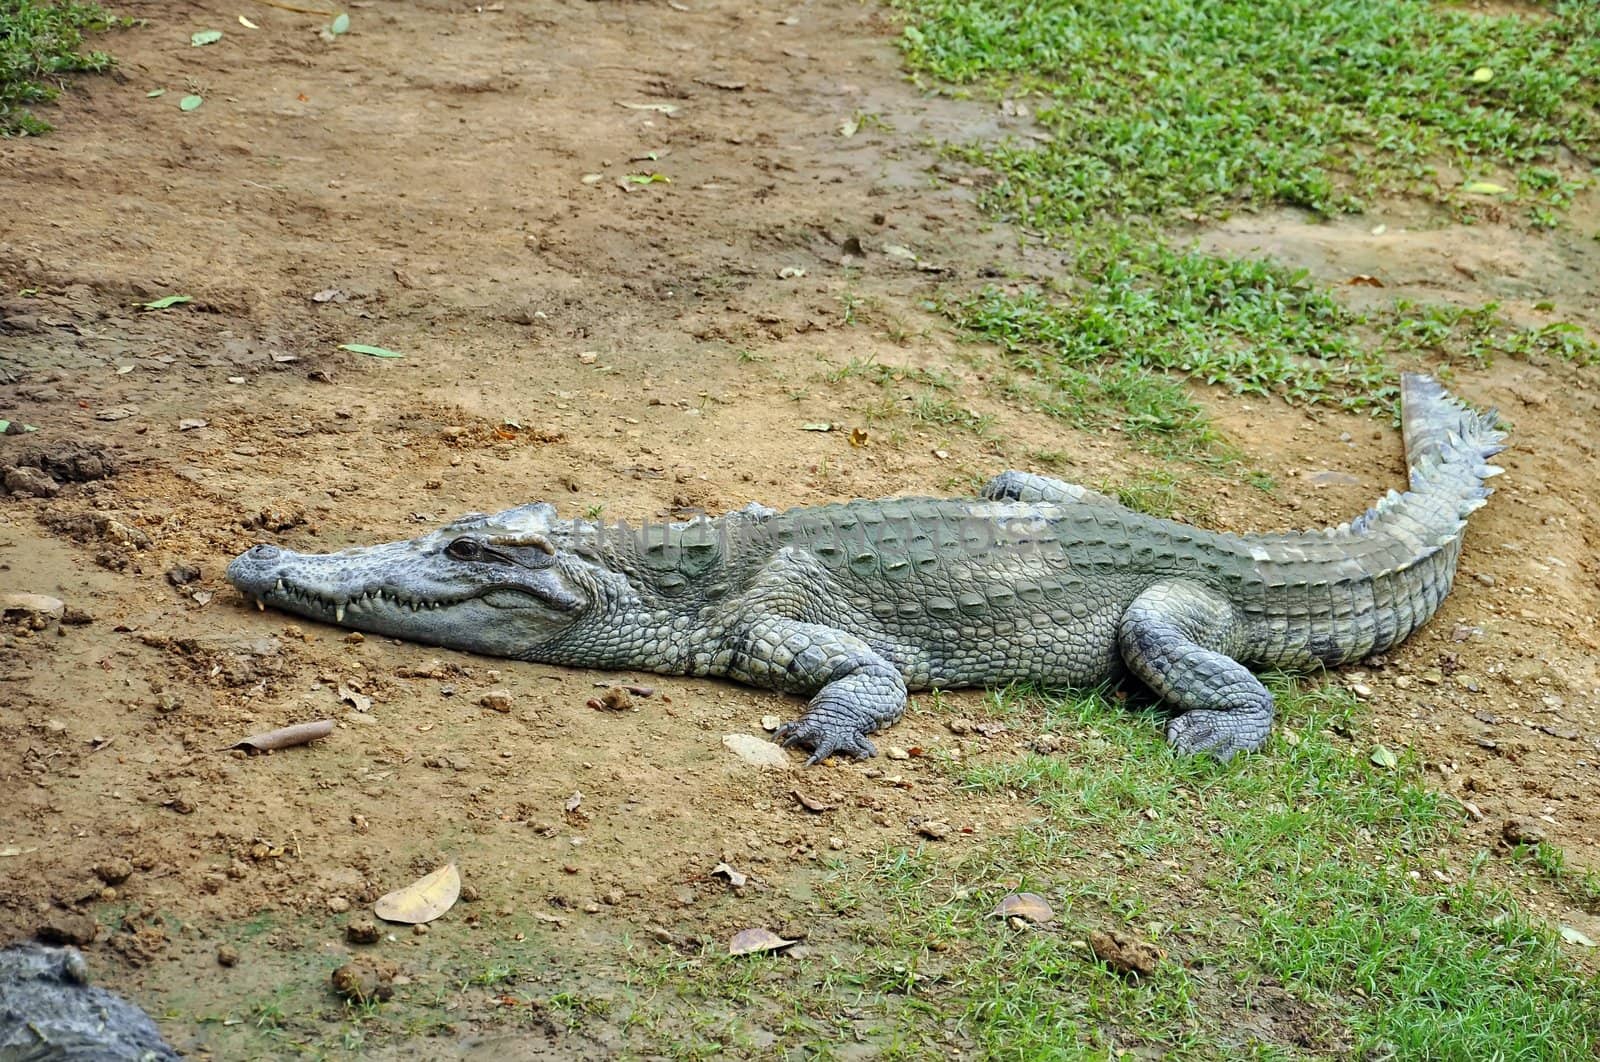 Crocodile by phanlop88